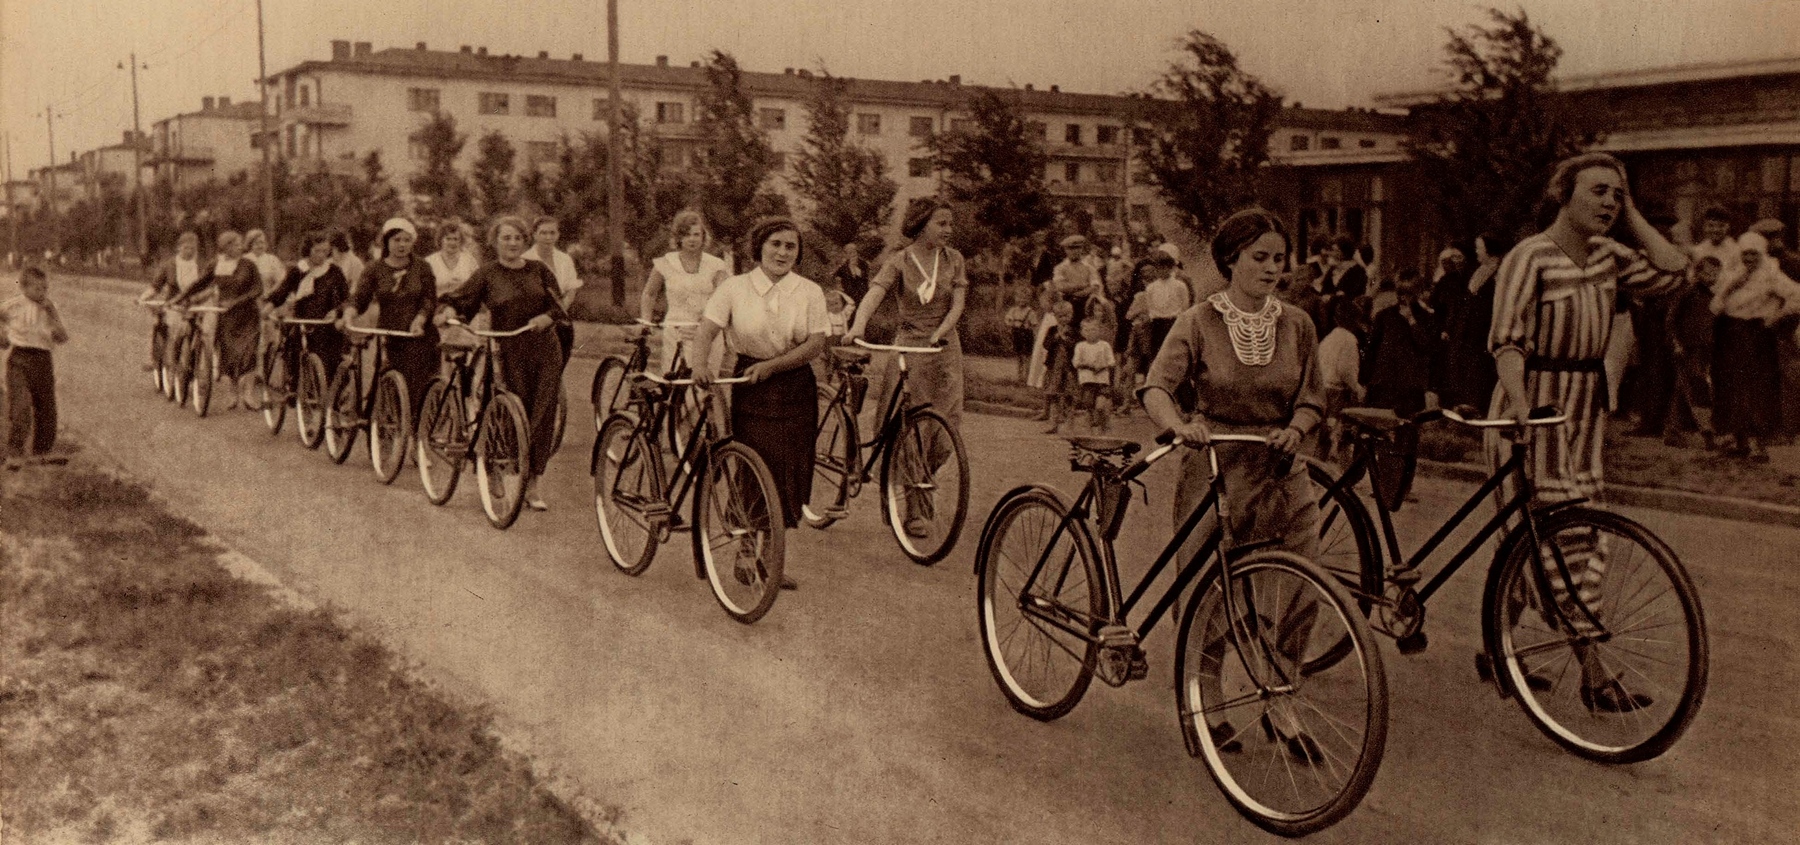 Этими велосипедами премировал активных общественниц металлургического завода им. Дзержинского нарком товарищ С. Орджоникидзе.